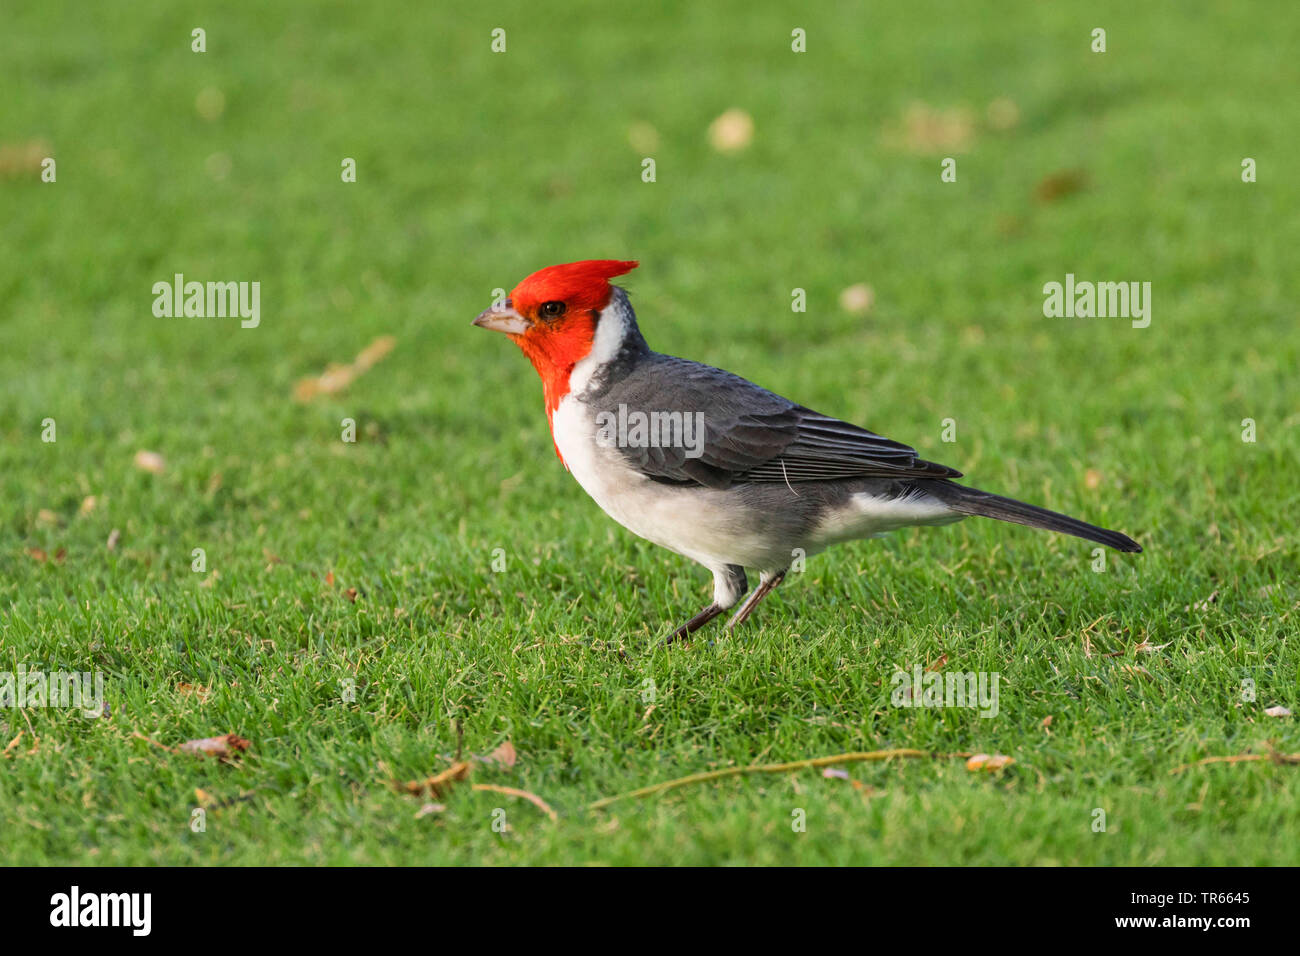 Red-crested cardinal (Paroaria coronata), de recherche de nourriture sur un parcours de golf, vue latérale, USA, Arizona, Wailea Blue Golf Course, Kihei Banque D'Images